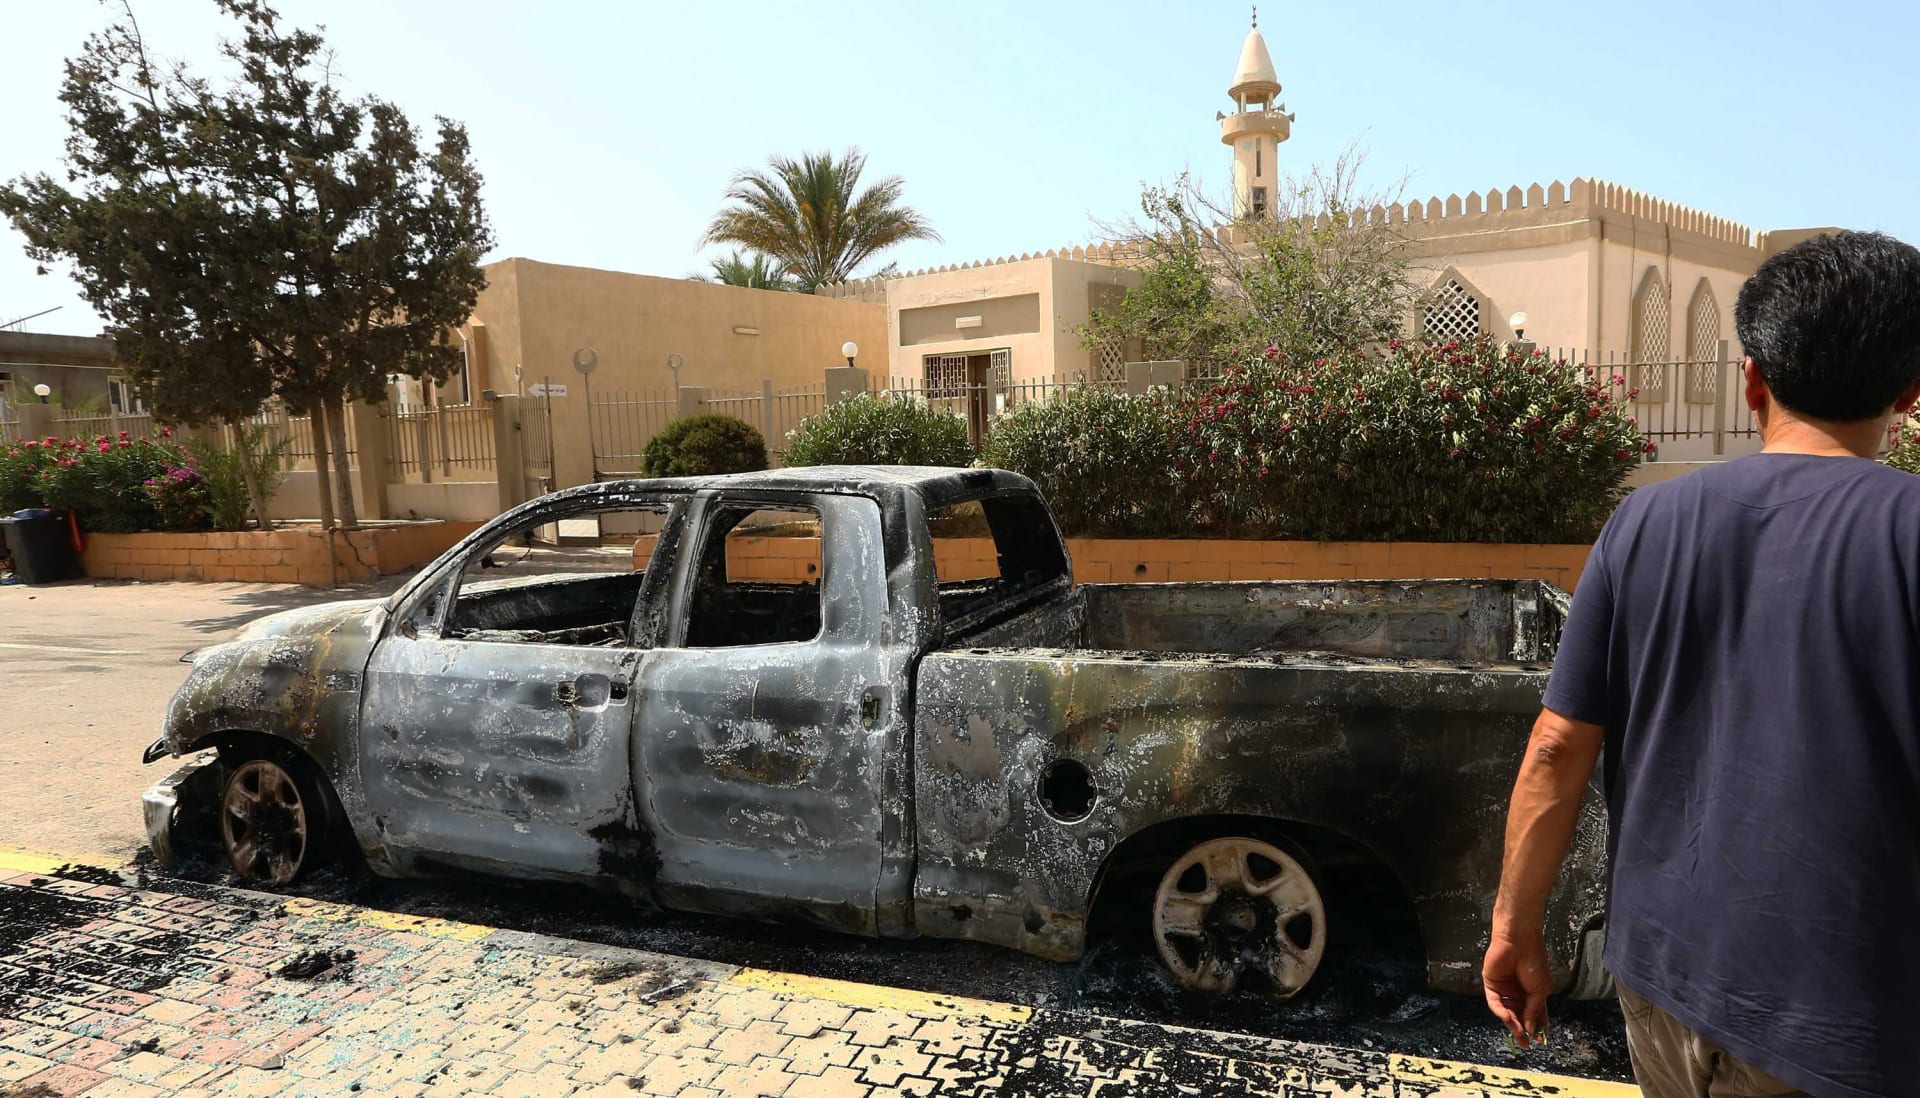 ليبيا: معارك للسيطرة على مطار طرابلس و"غرفة عمليات الثوار" تستنفر.. وتحذر حفتر